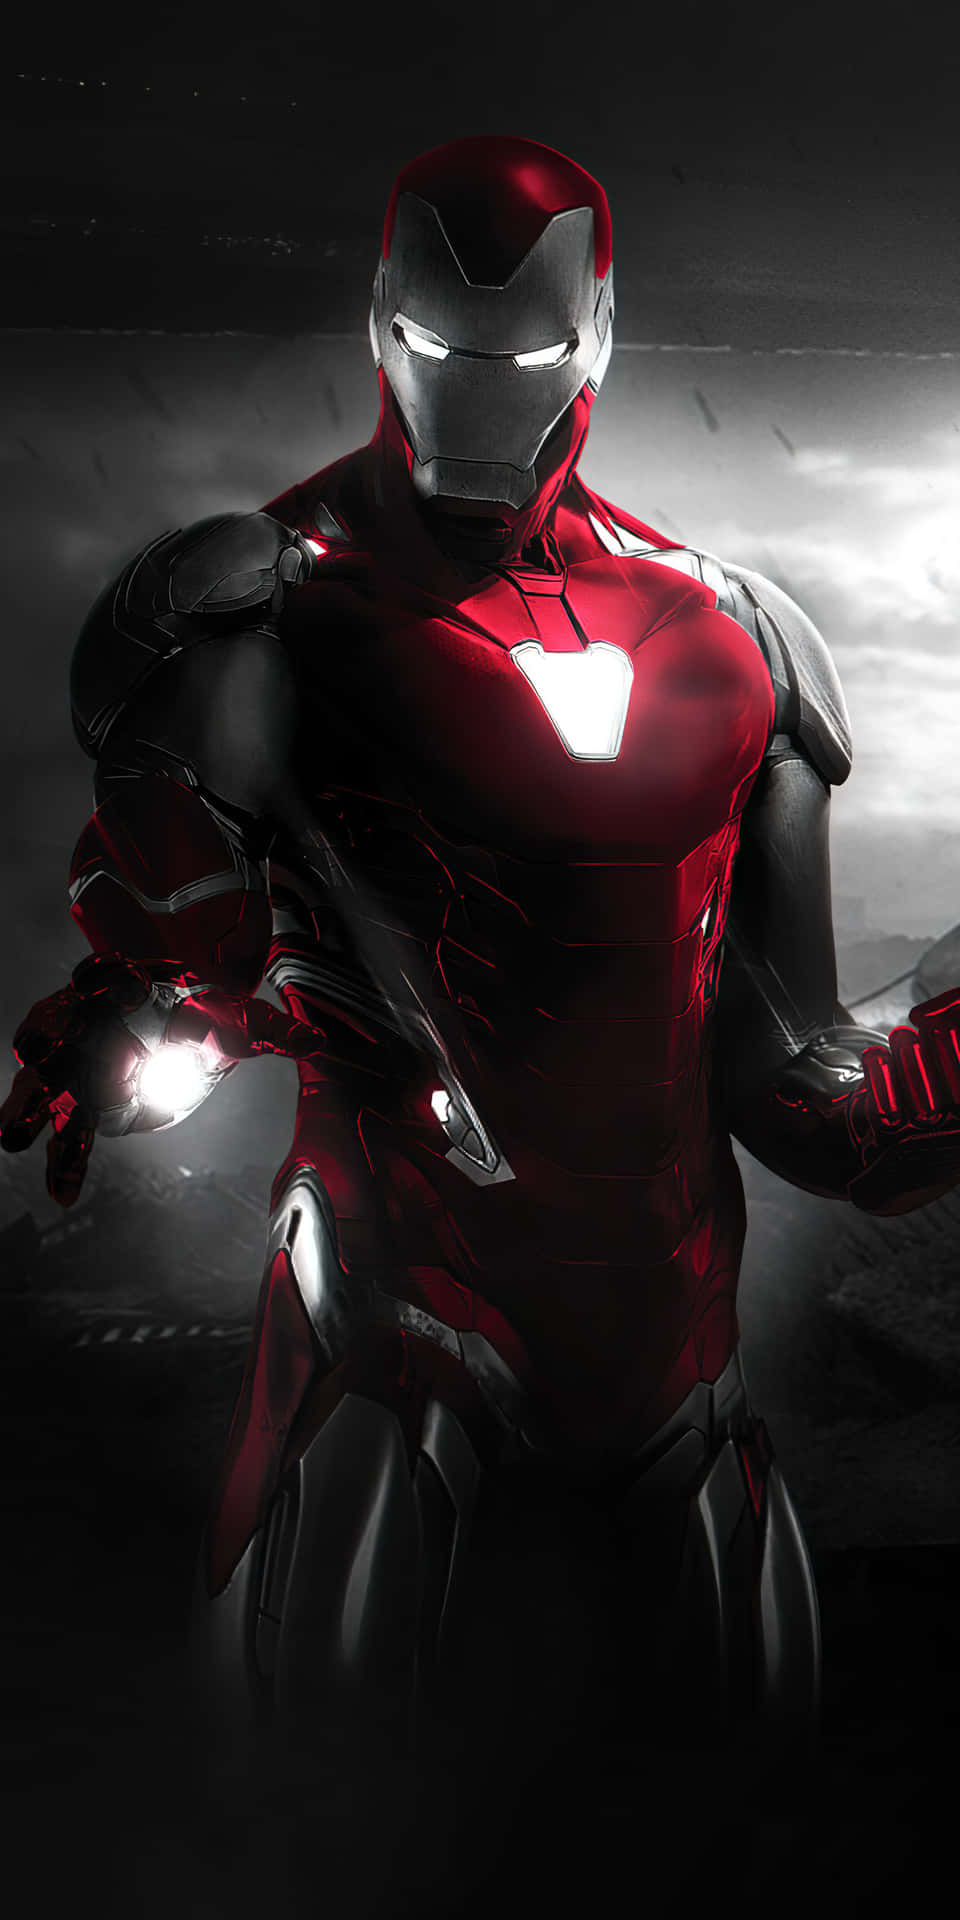 Với hình nền Pixel 3 Iron Man, bạn sẽ cảm nhận được sự tinh tế và sắc nét đến từng chi tiết của bức tranh. Không những thế, hình nền trong suốt giúp lợi ích cho khả năng tùy chỉnh và điều chỉnh hình ảnh để phù hợp với màn hình điện thoại của bạn. Hãy nhanh tay tải về và trang hoàng cho màn hình của bạn!